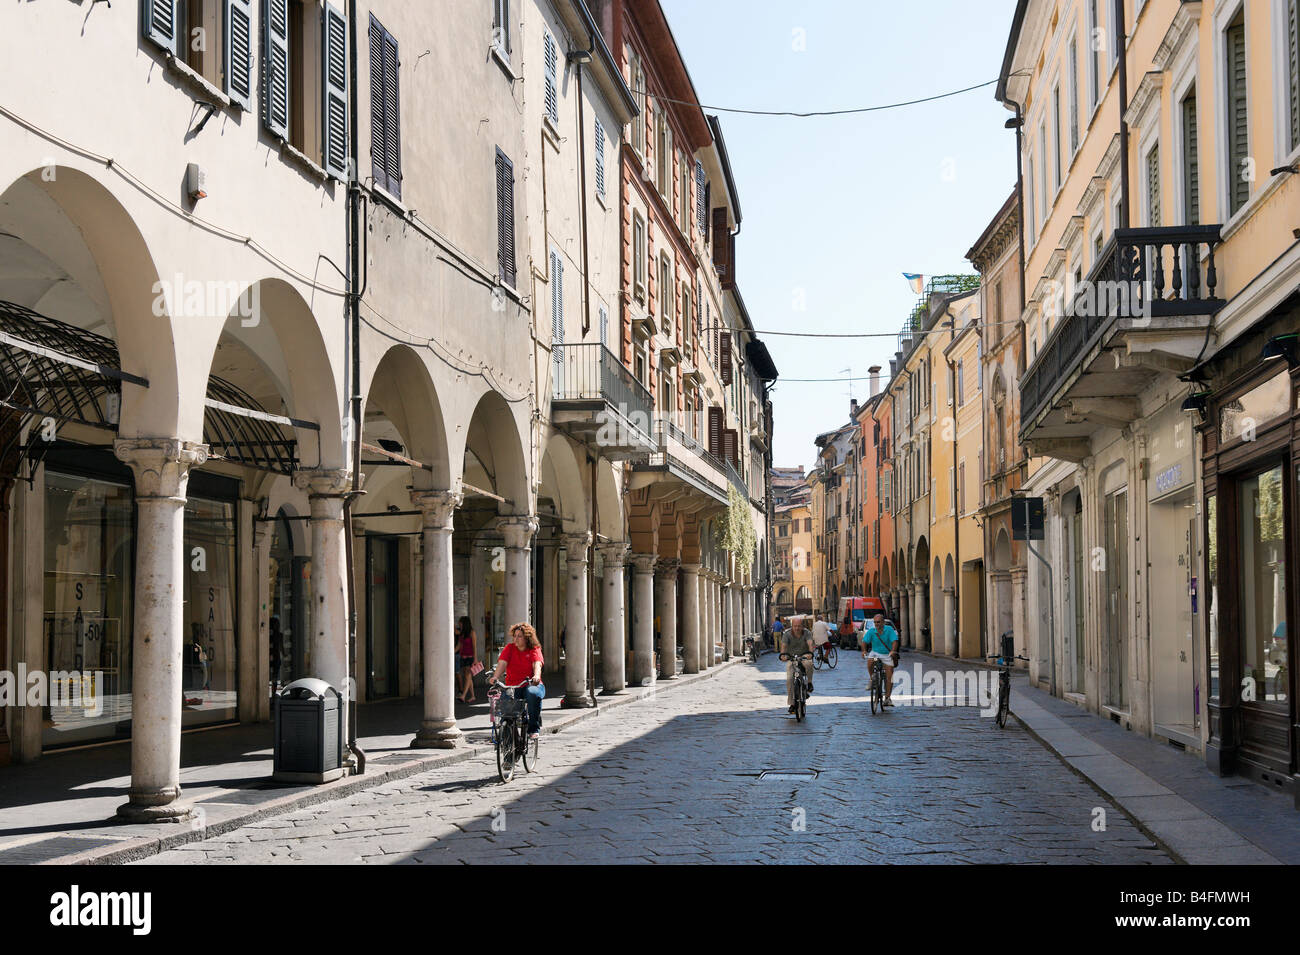 Rue pavée typique dans la vieille ville, de Mantoue (Mantova), Lombardie, Italie Banque D'Images